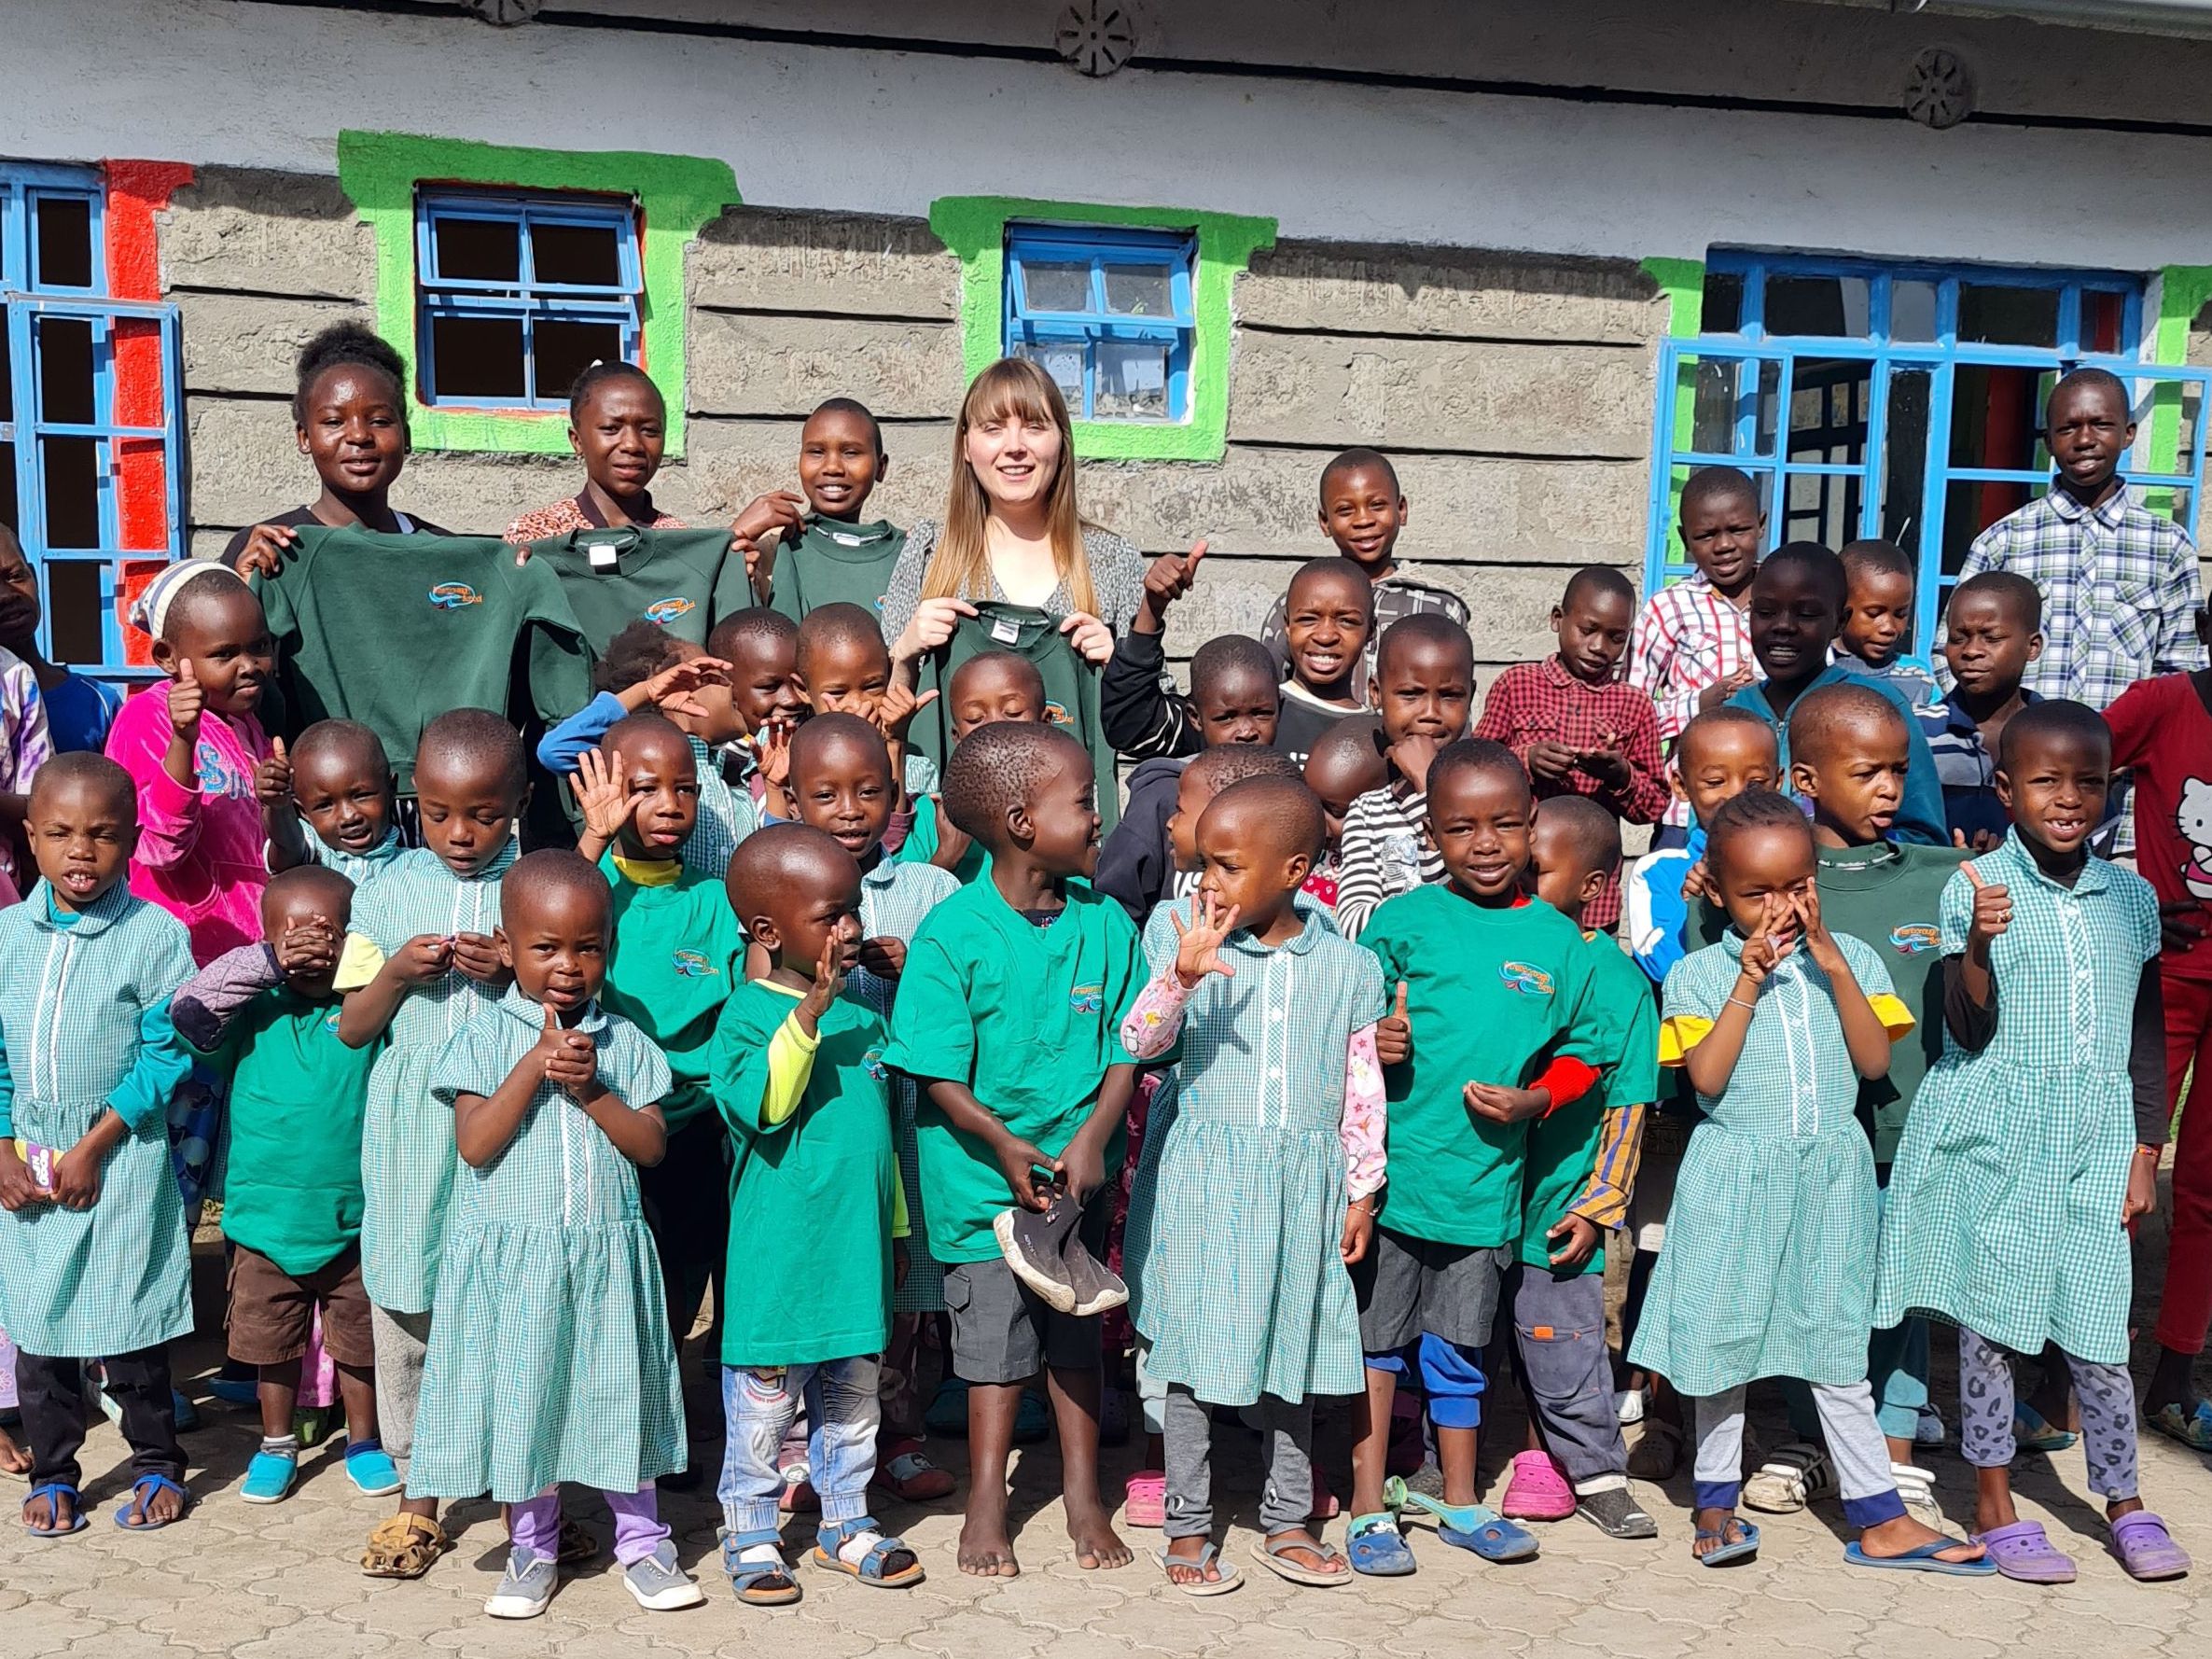 Mit Unternehmensspenden in Afrika Kinder unterstützen - als Unternehmen spenden